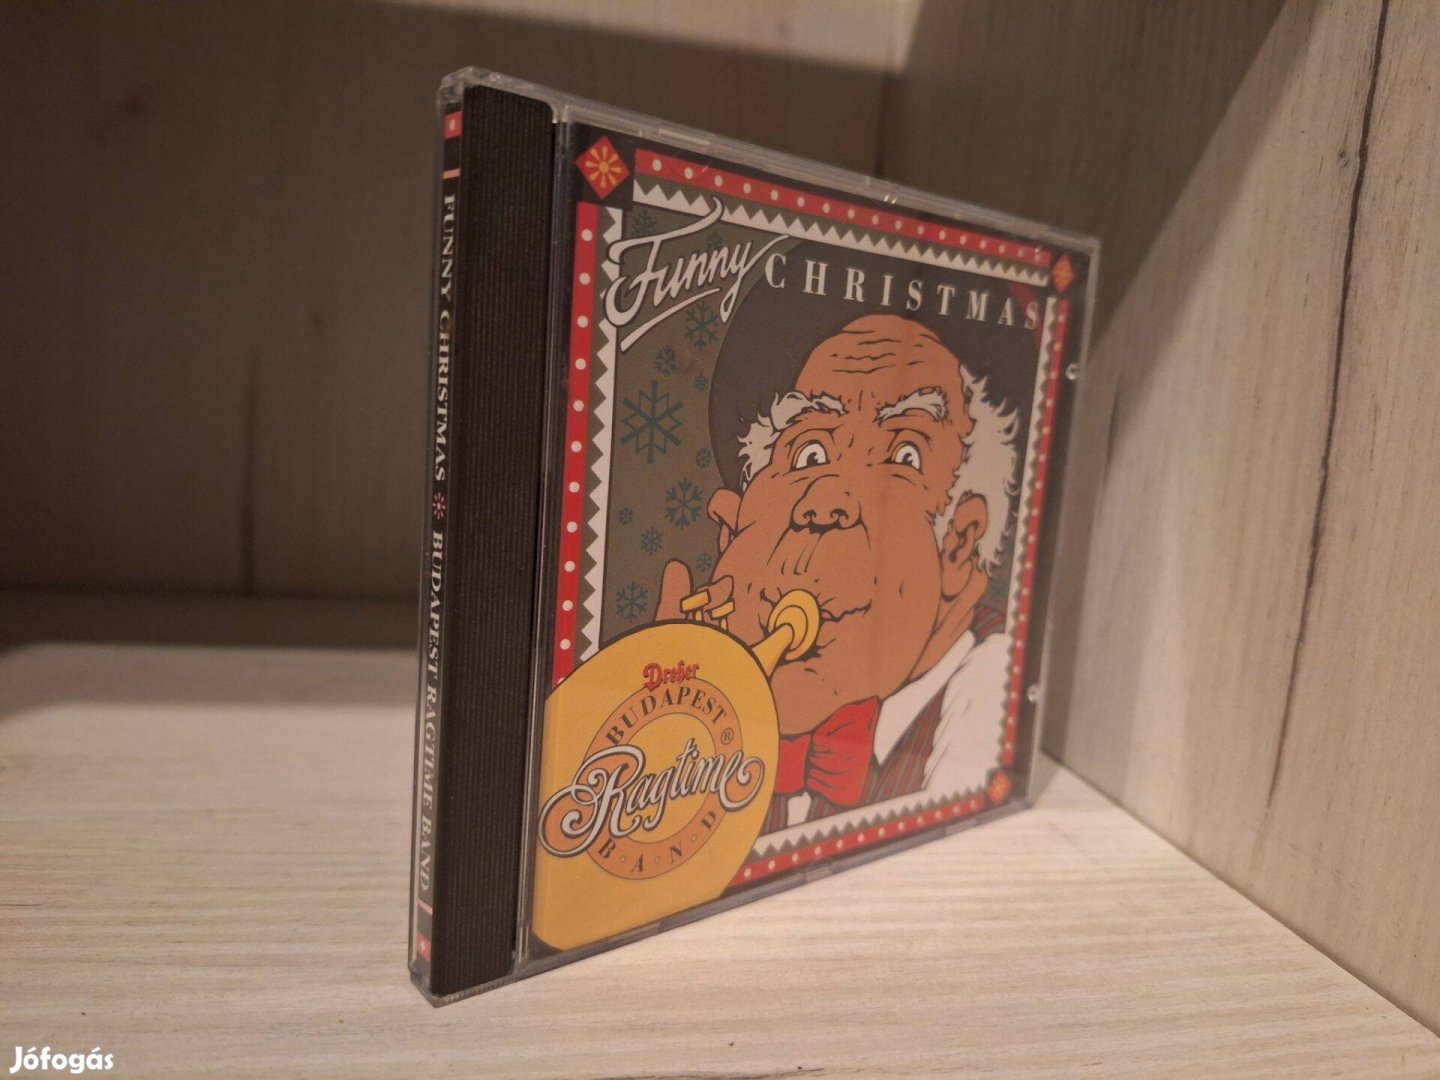 Budapest Ragtime Band - Funny Christmas CD